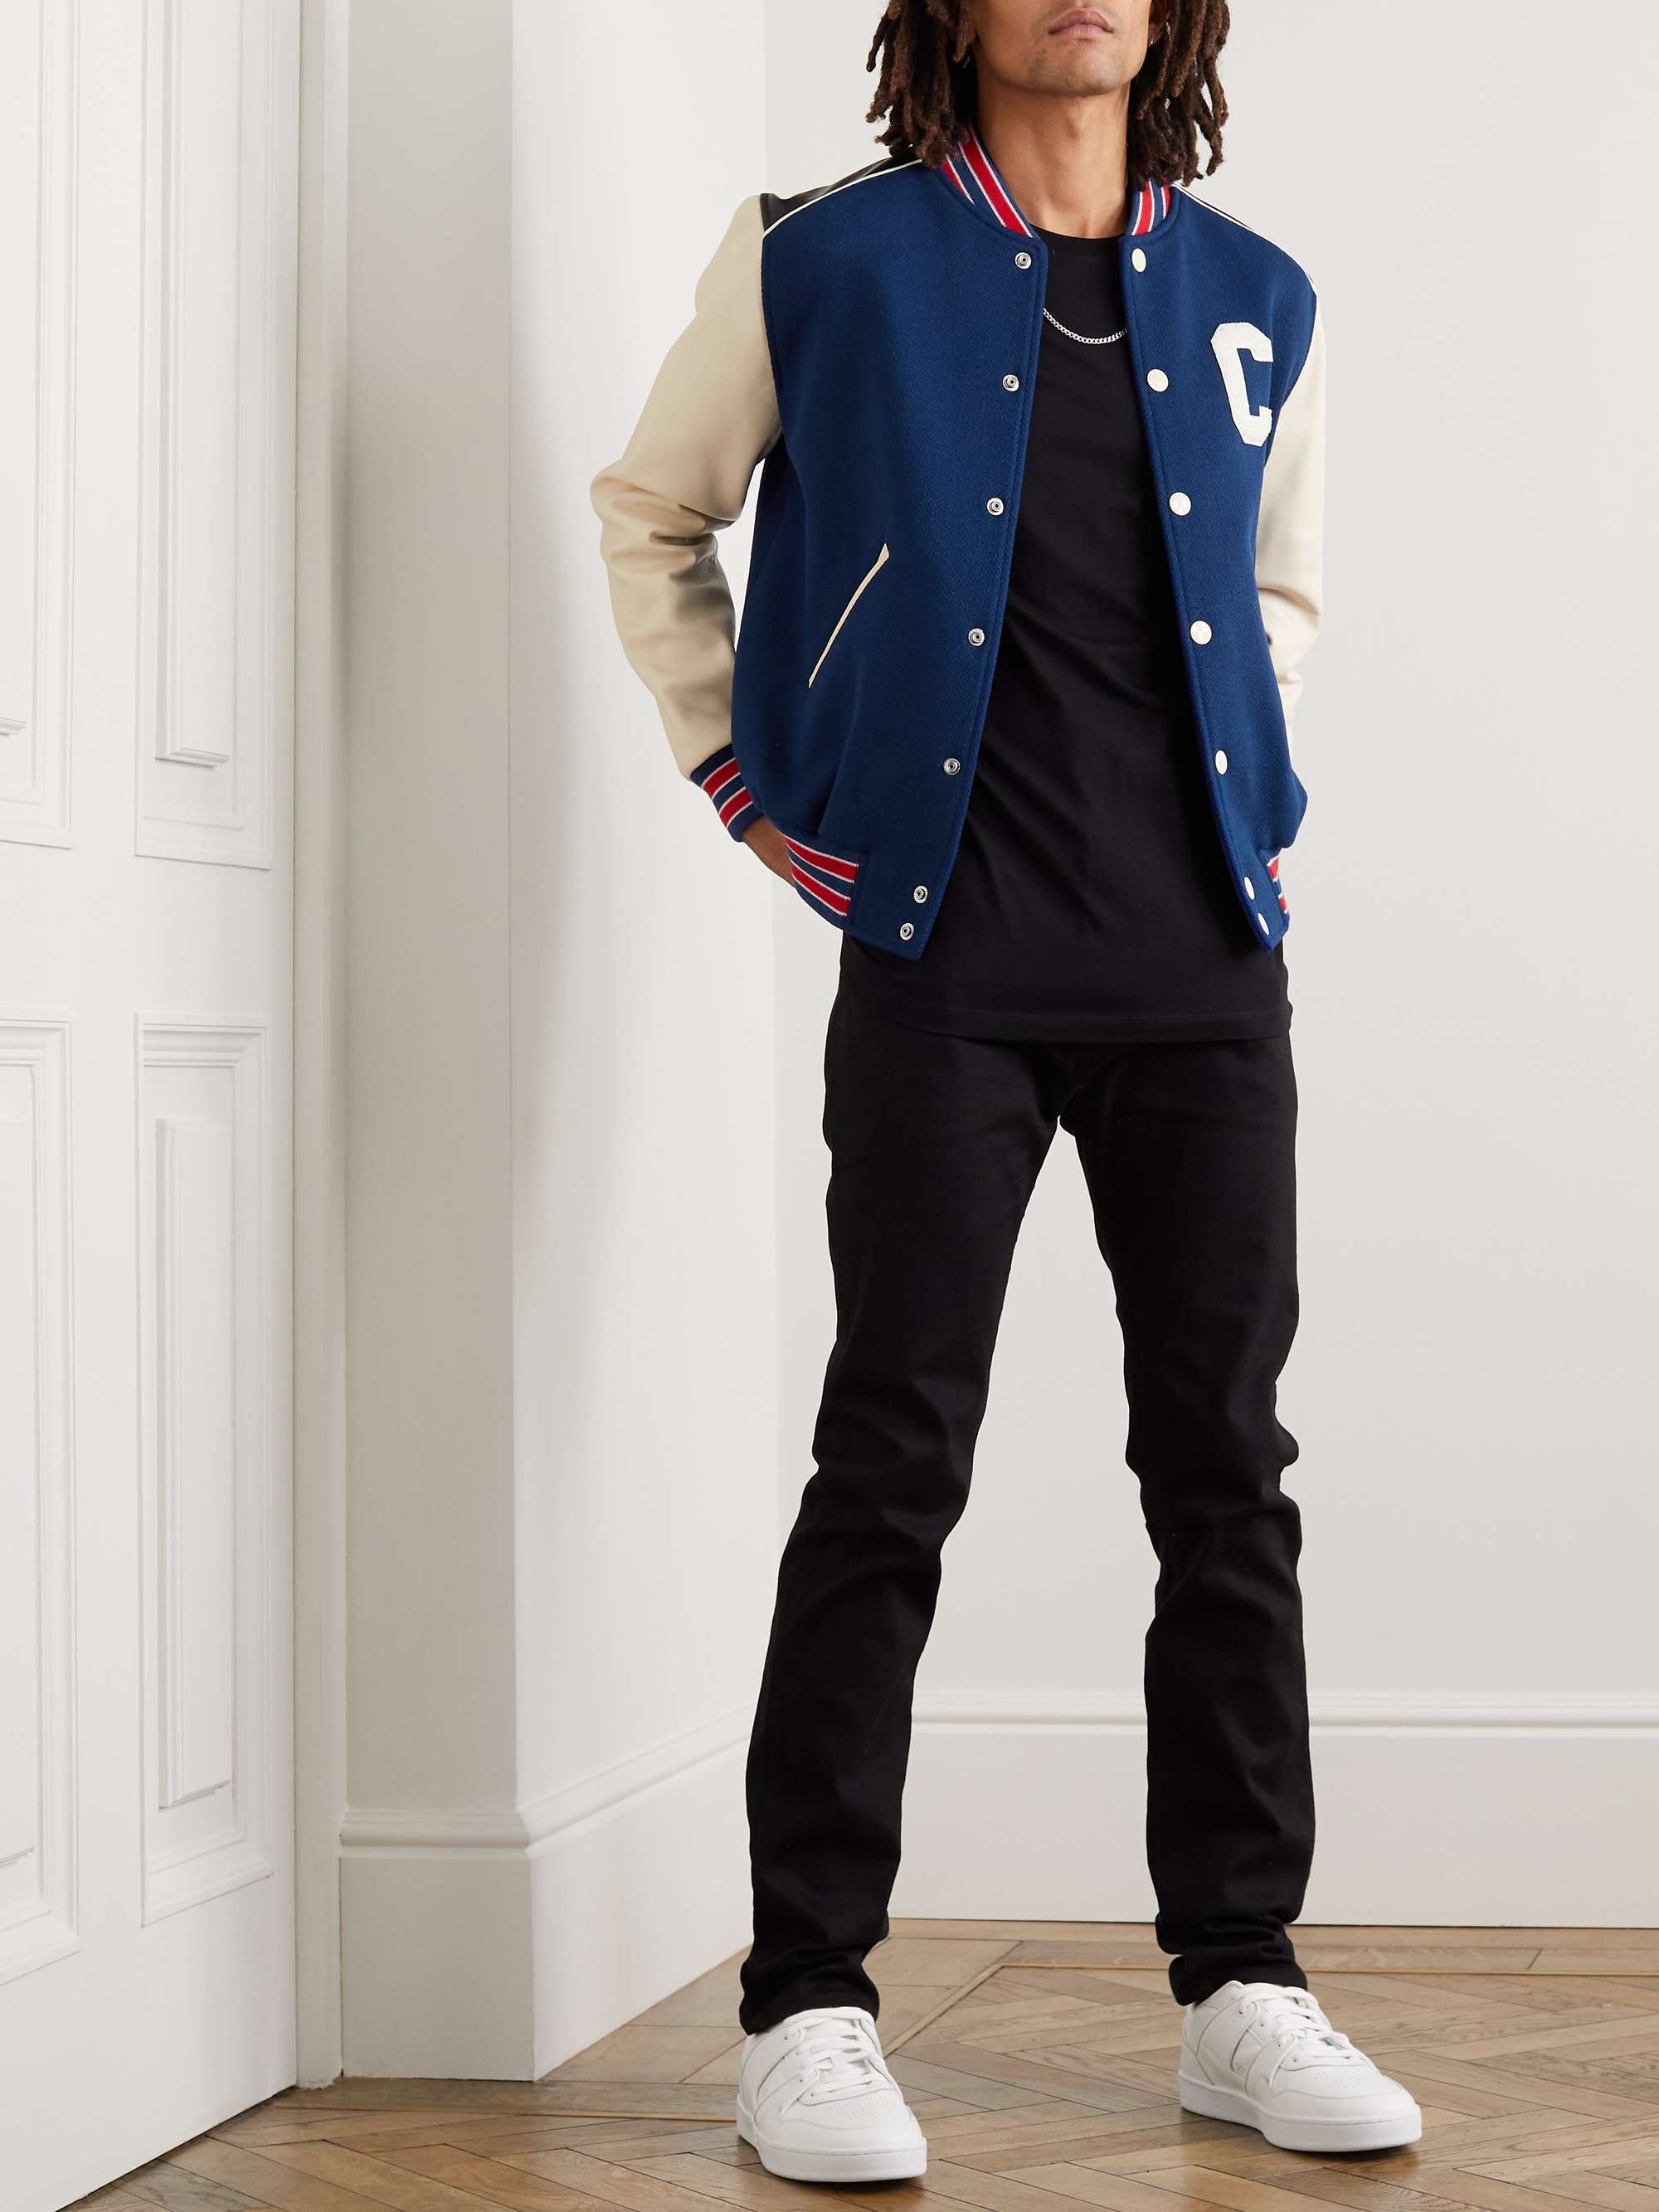 CELINE HOMME Logo-Appliquéd Wool-Blend and Leather Varsity Jacket